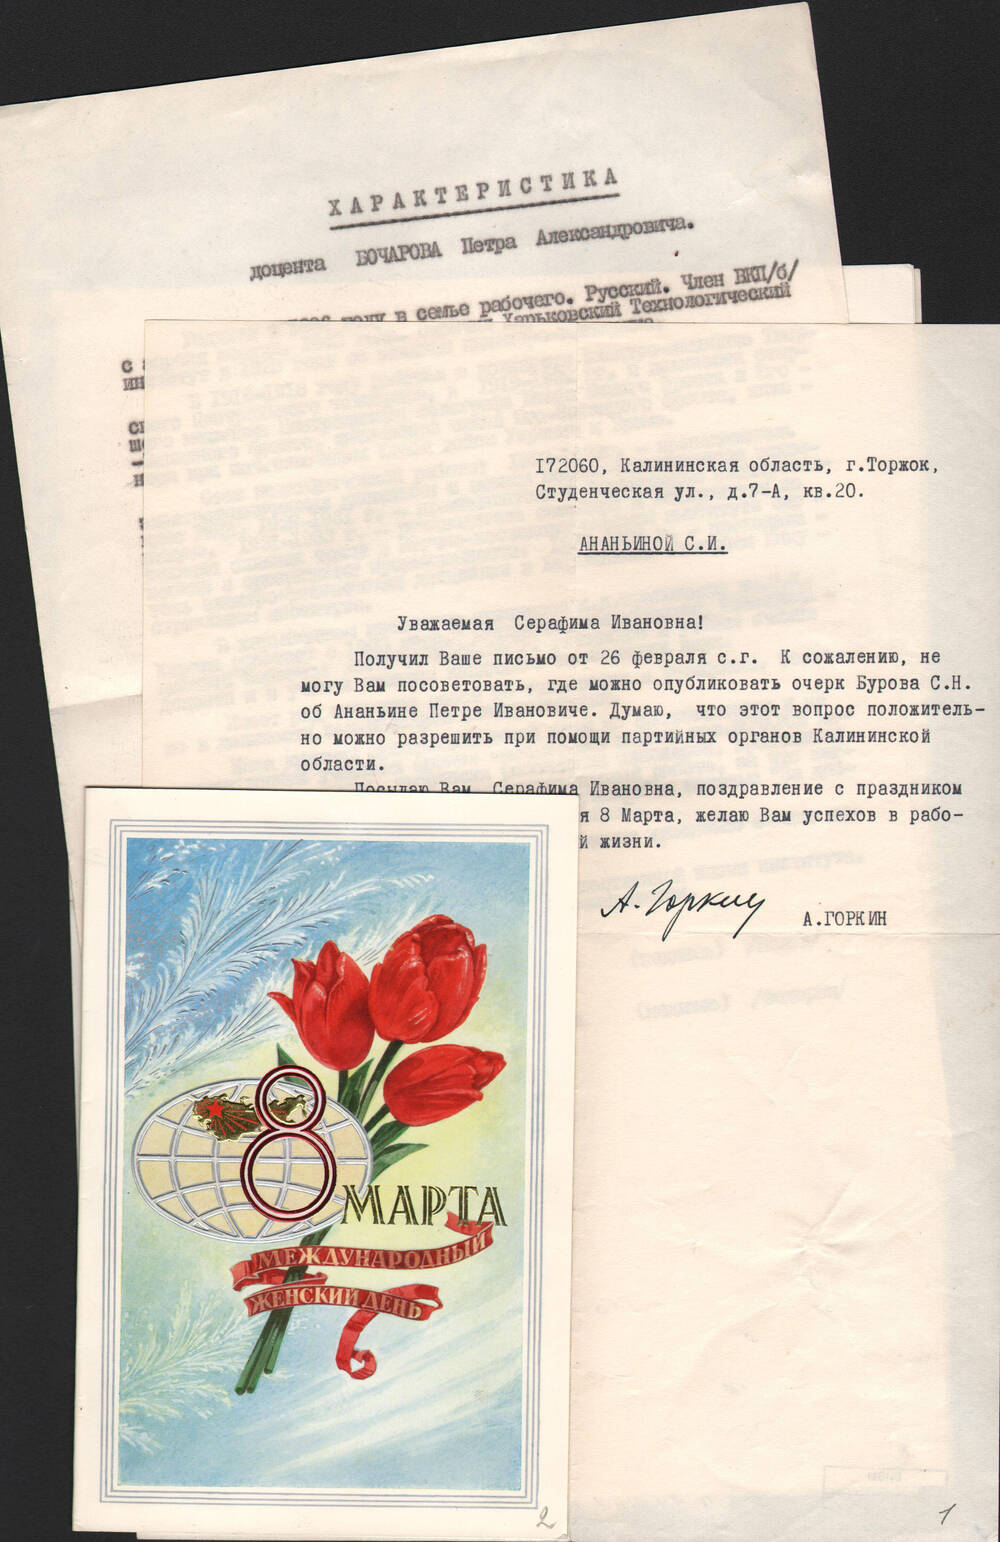 Письма на имя С.И. Ананьиной из Москвы от А.Ф. Горкина